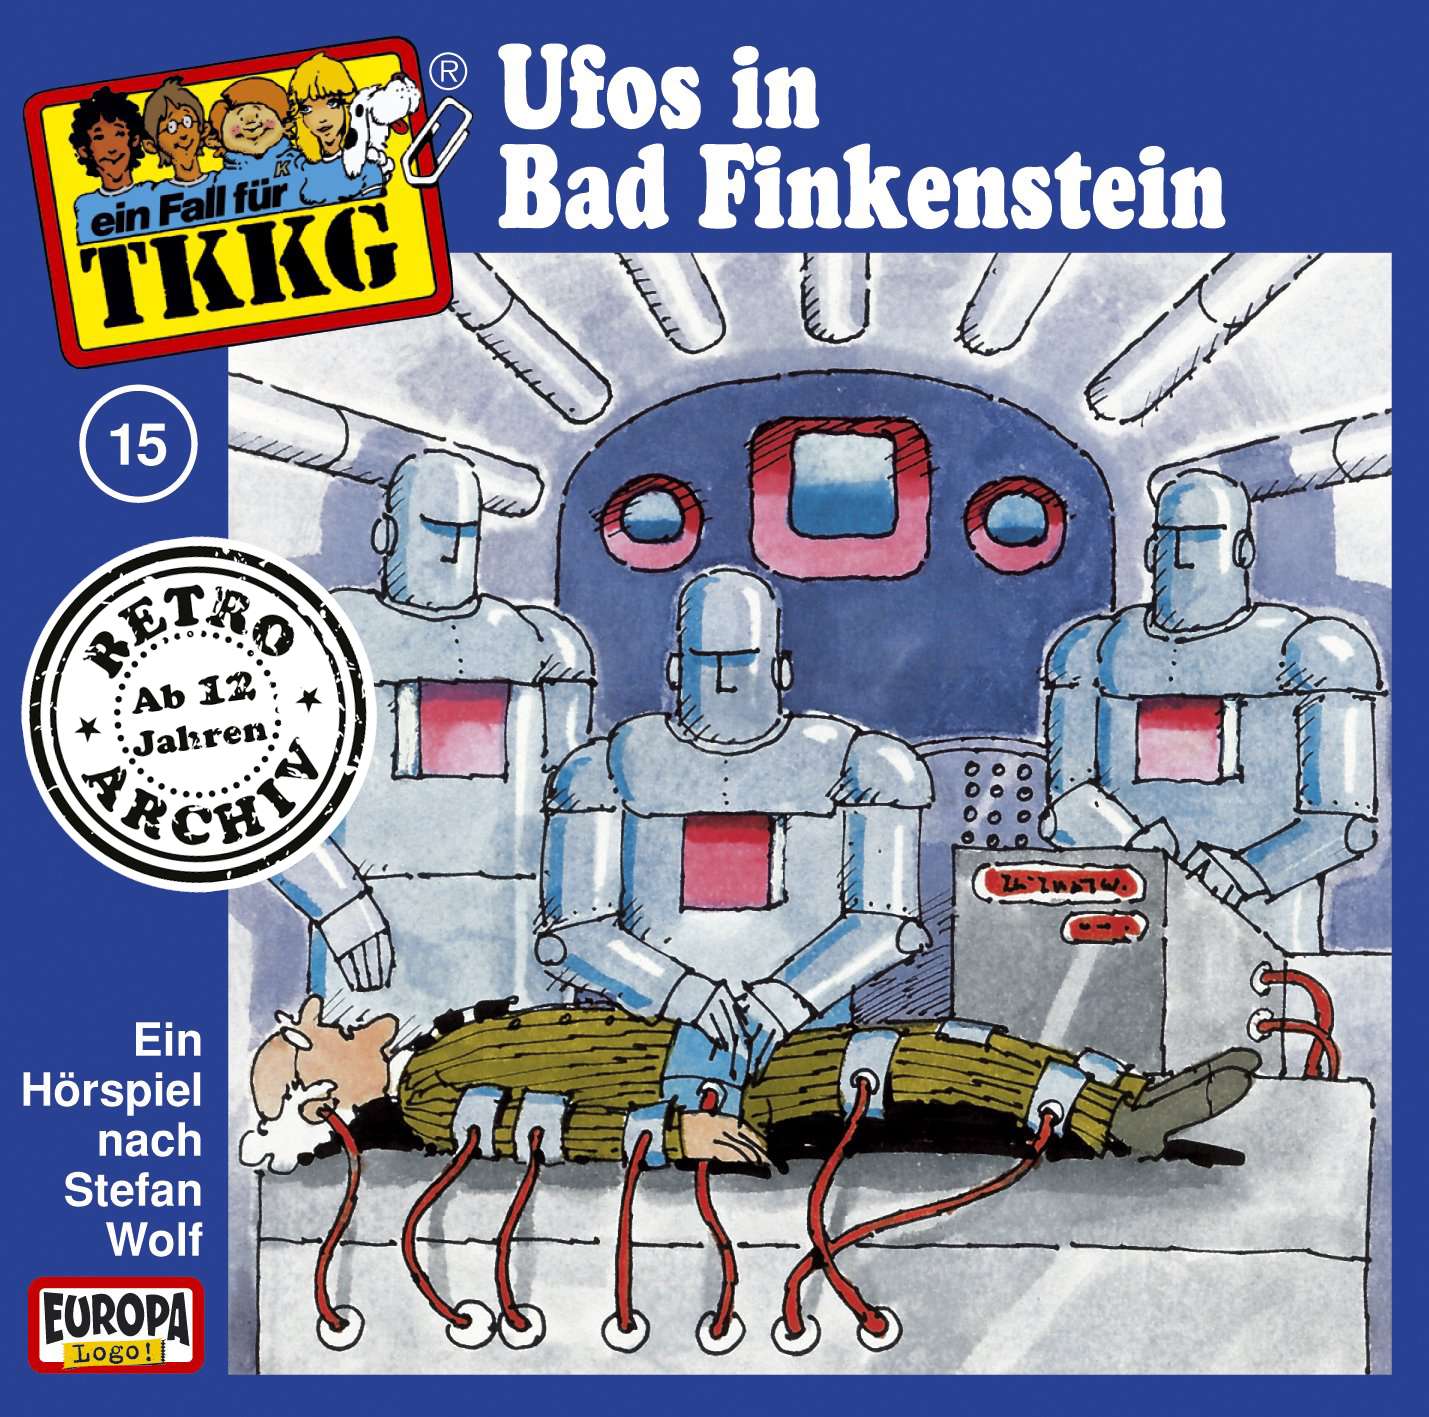 TKKG Retro-Archiv - Ufos in Bad Finkenstein